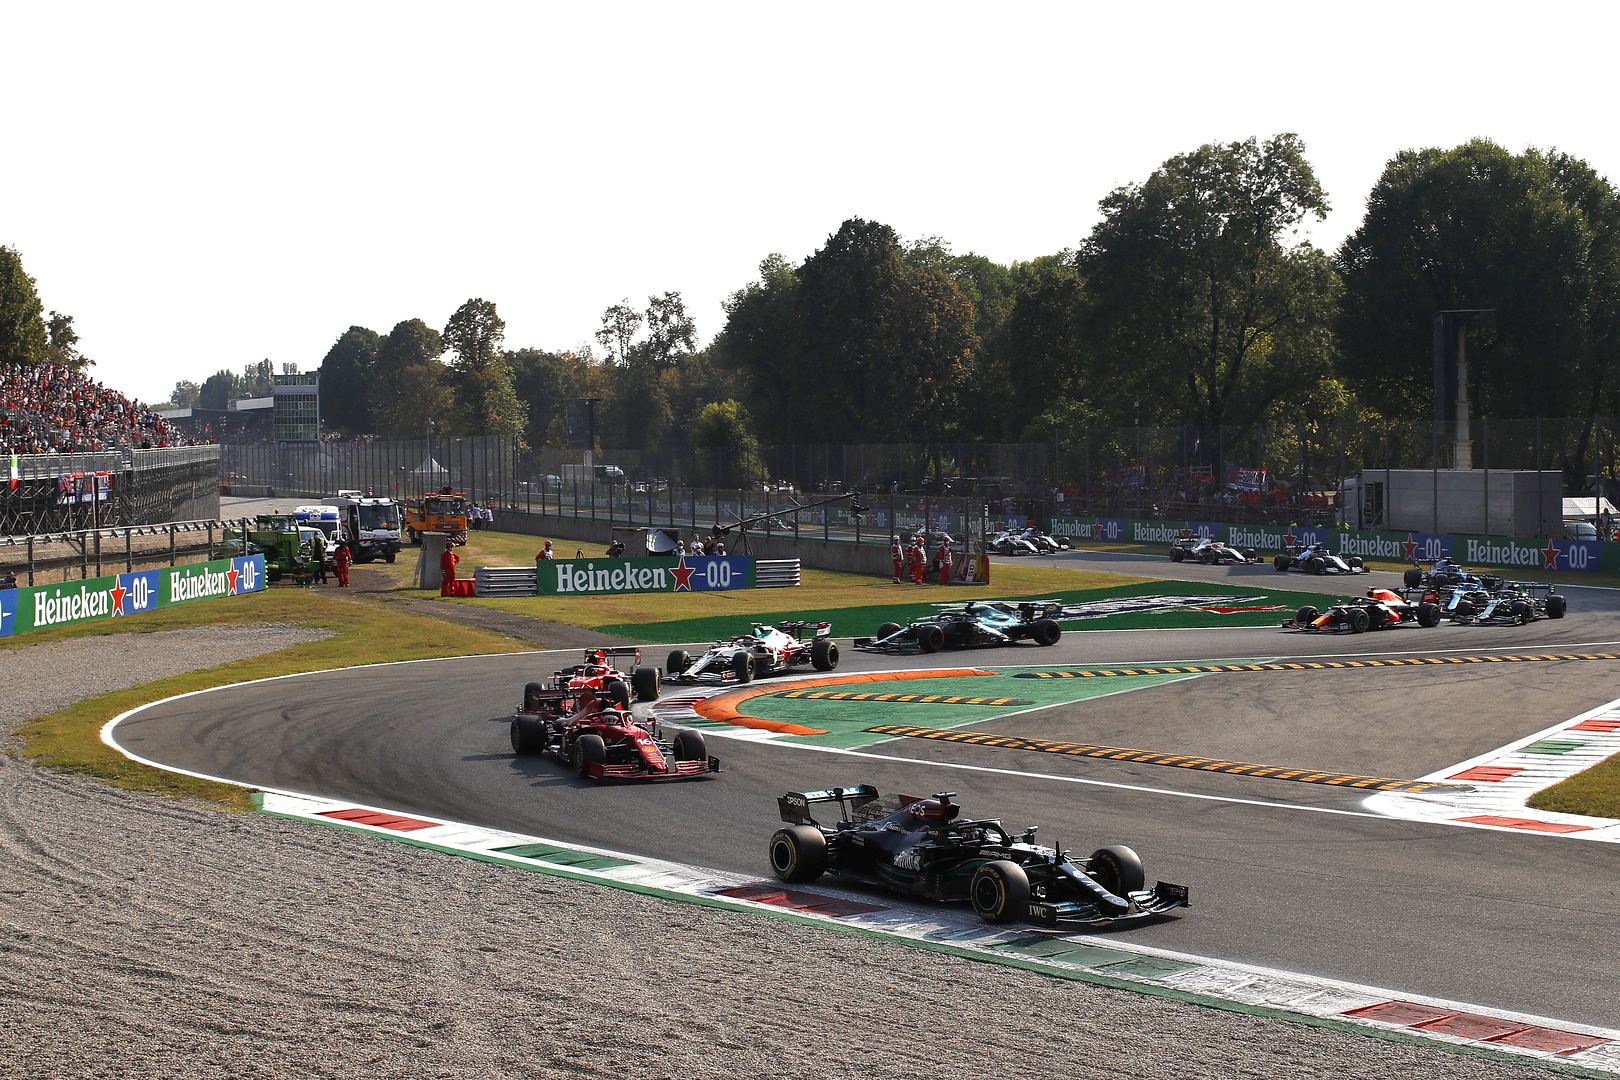 Le départ du Grand Prix d'Italie 2021 de Formule 1